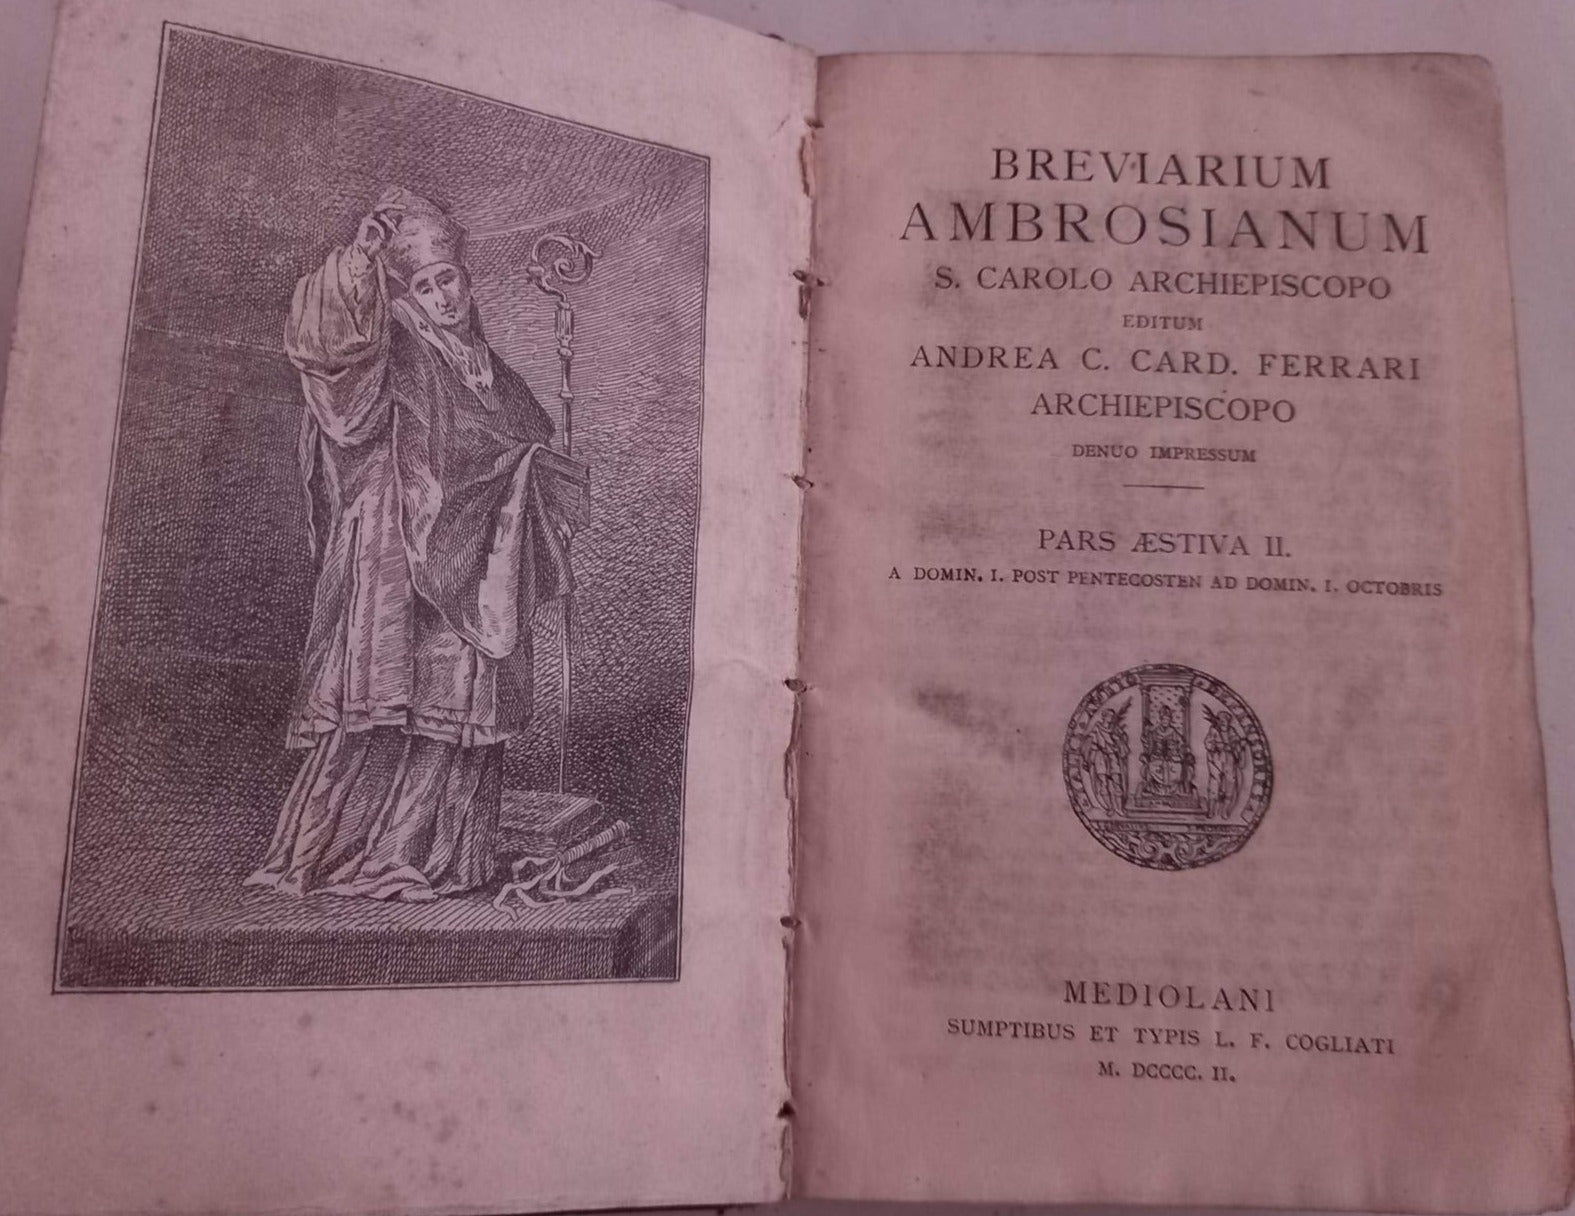 Breviarium Ambrosianum. Pars Aestiva II.